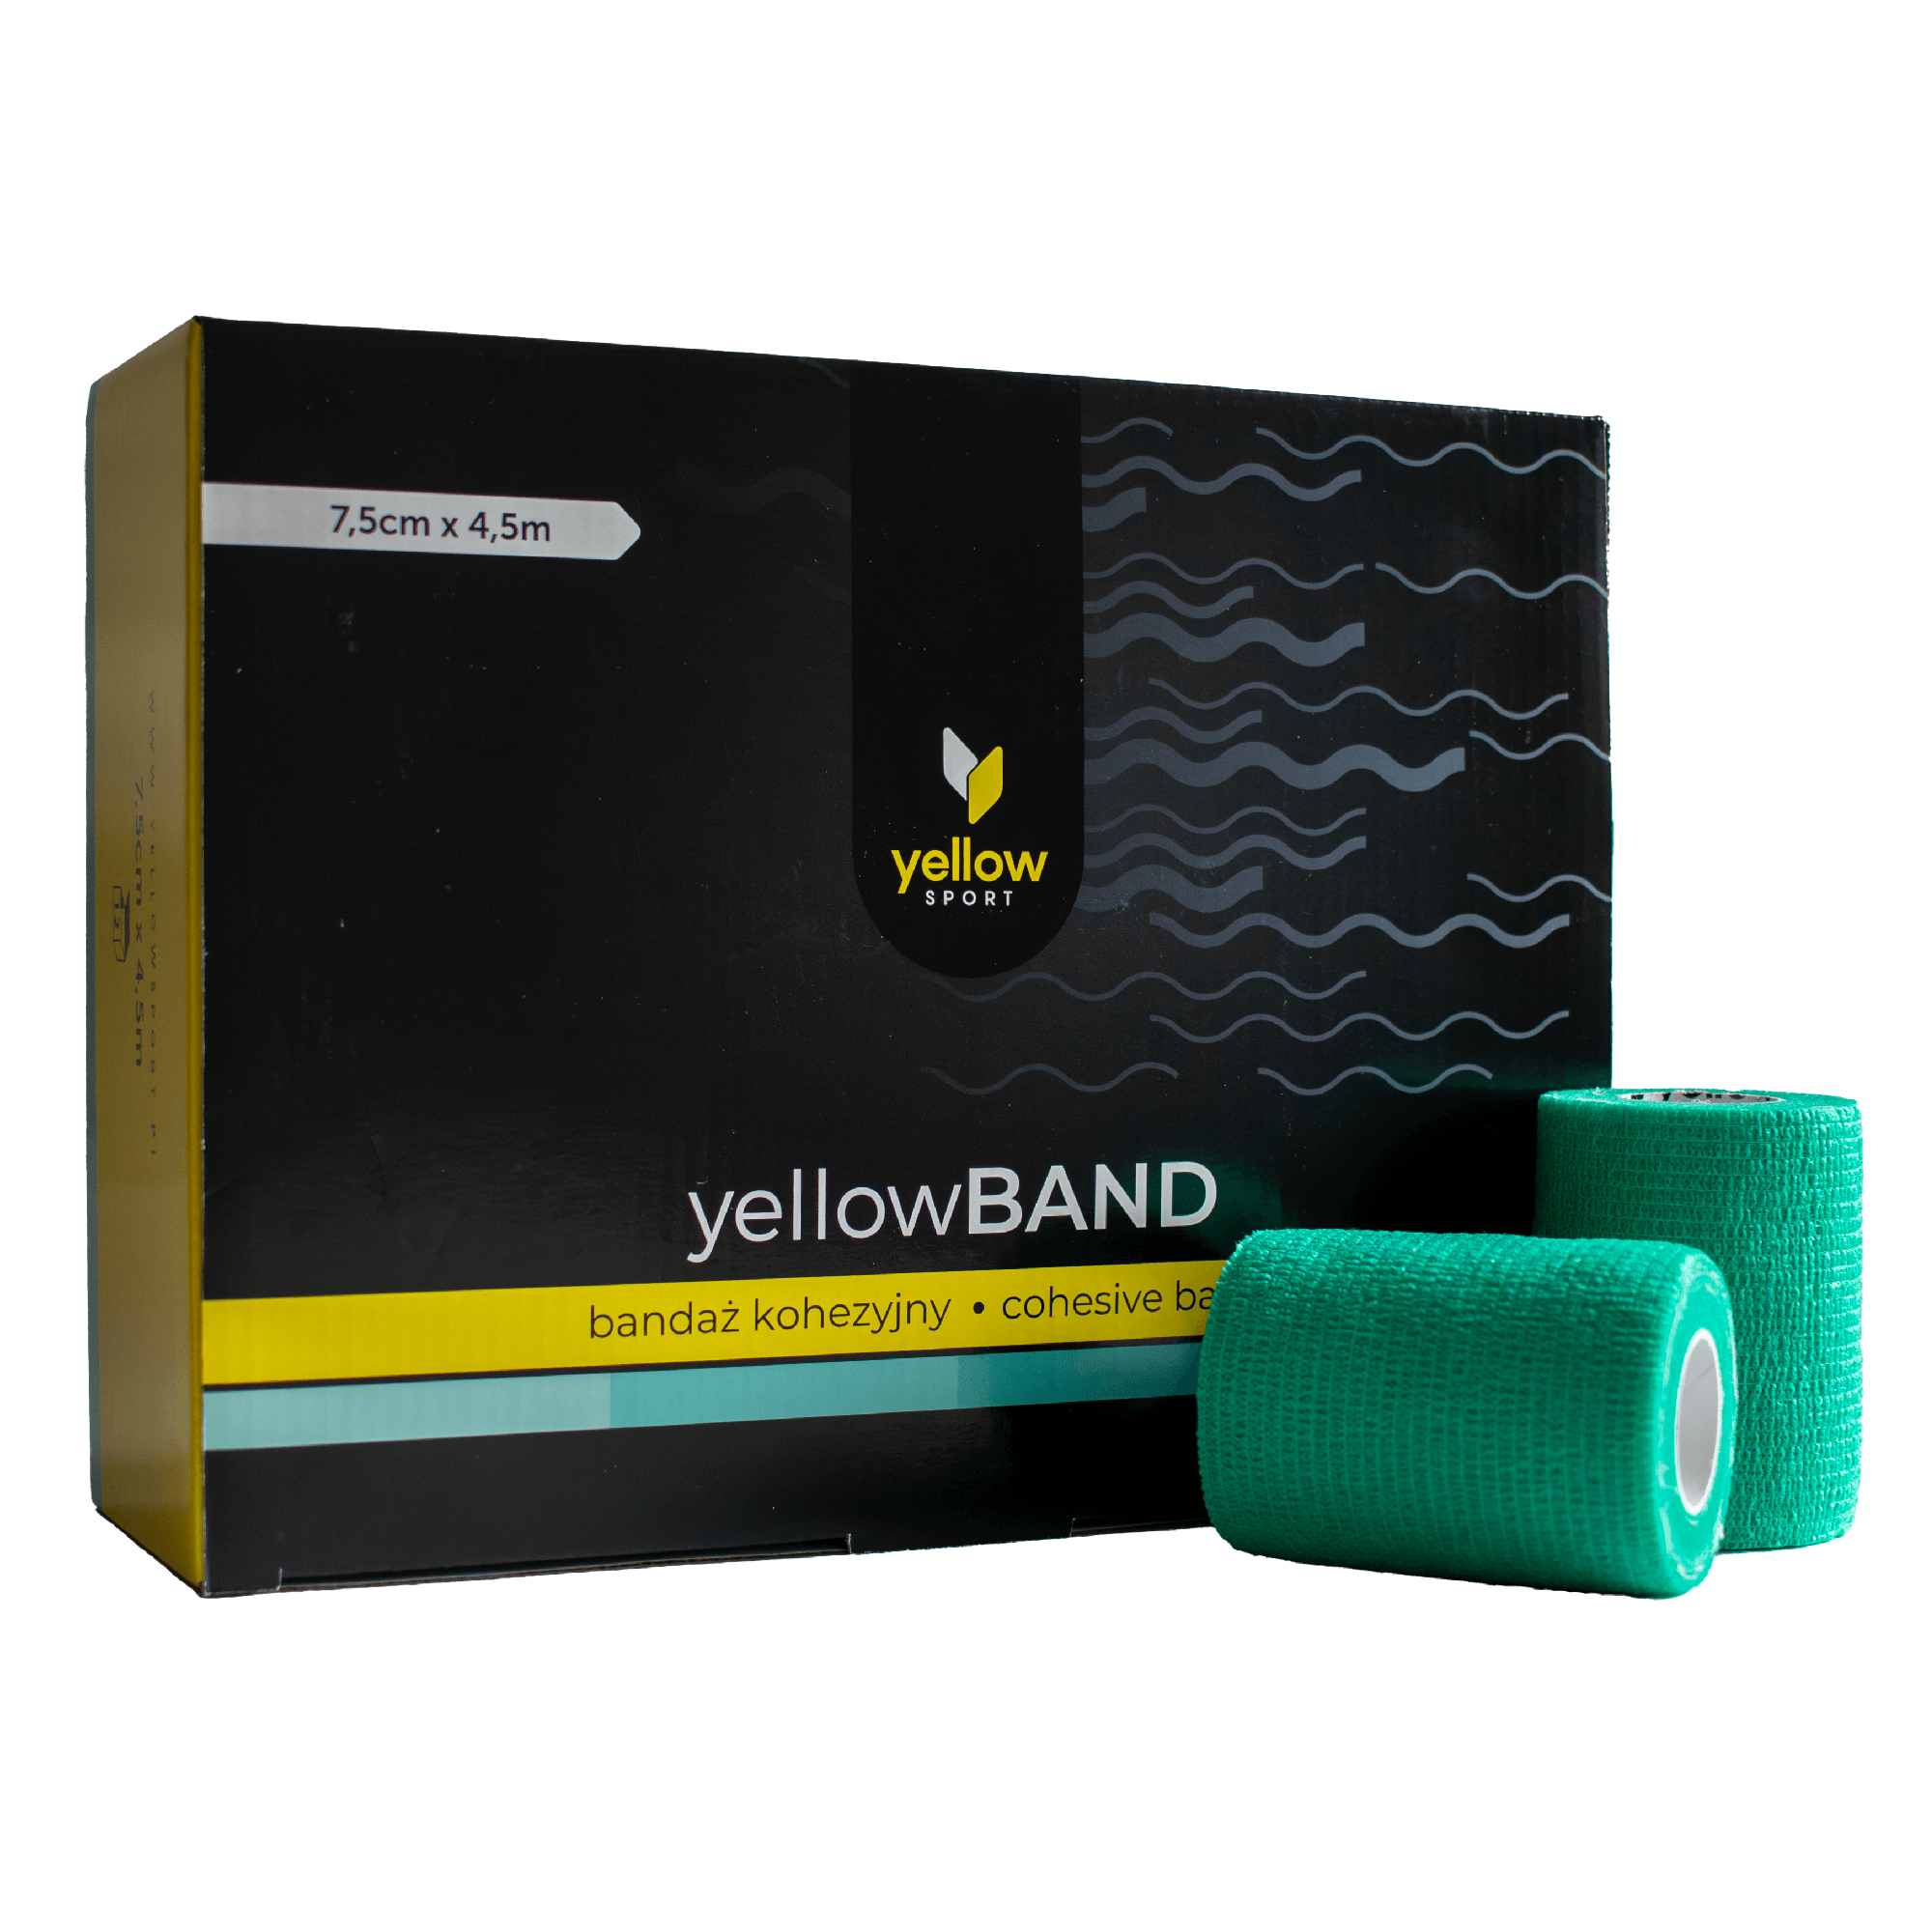 Bandaż kohezyjny yellowBAND - 7,5cm x 4,5m, soczyście zielony zestaw 12 szt.